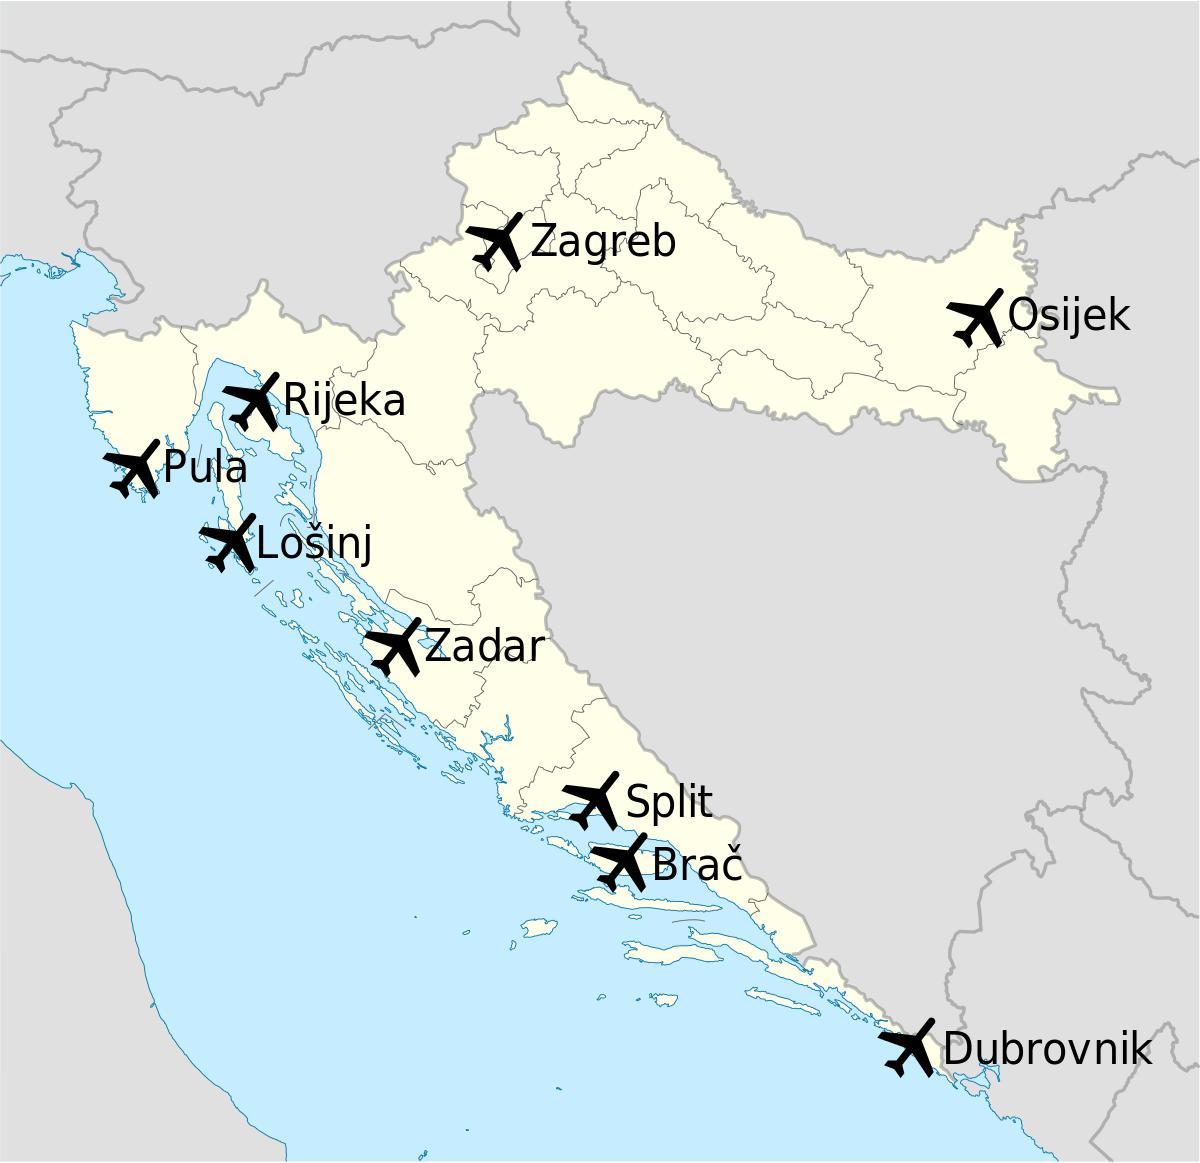 kort over kroatien, der viser lufthavne